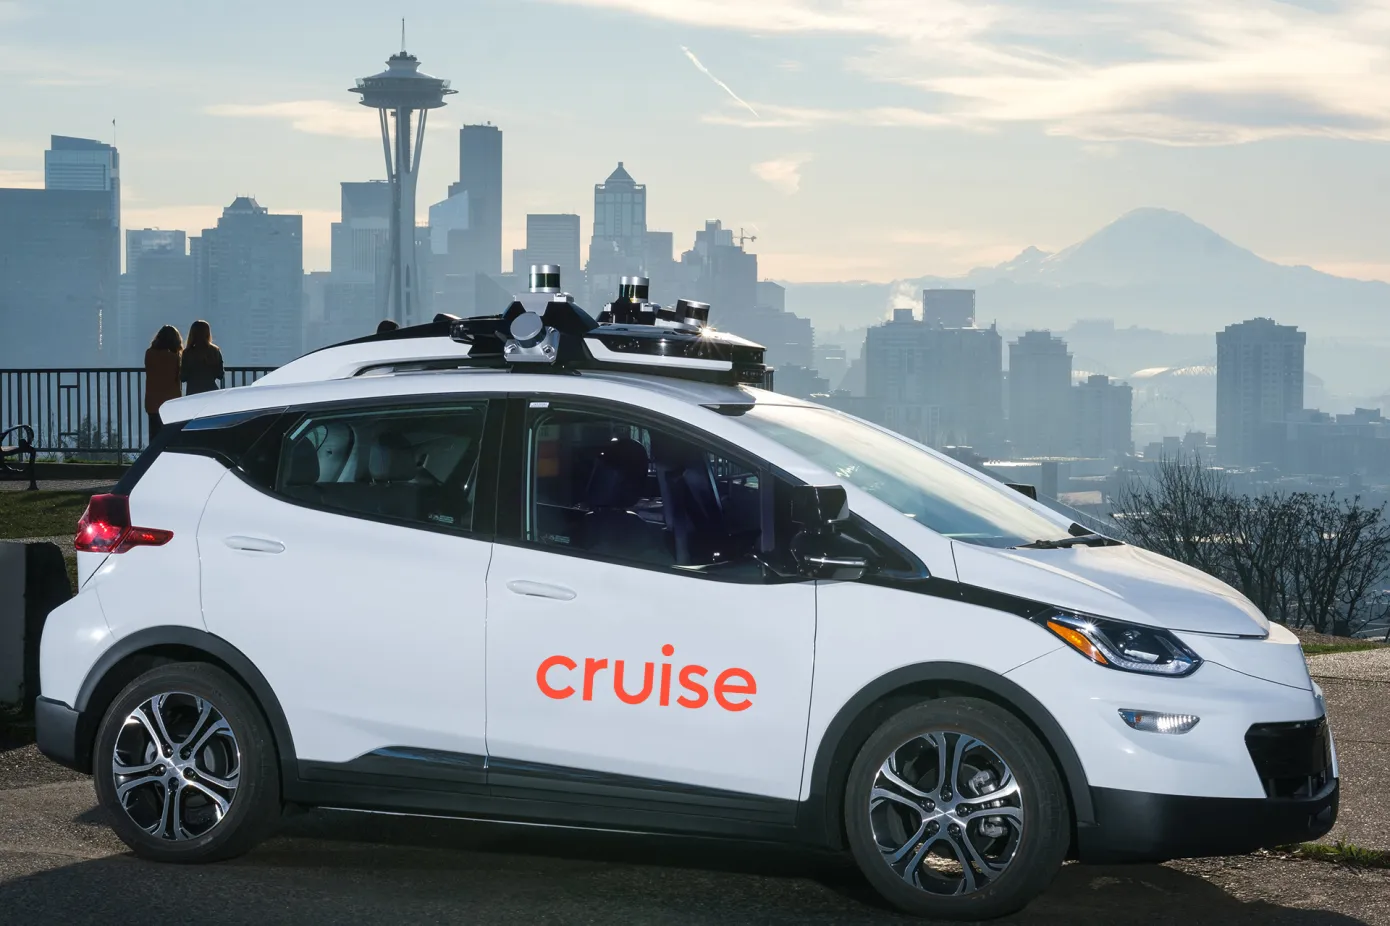 Cruise планує розгорнути послугу роботаксі в Сіетлі та Вашингтоні